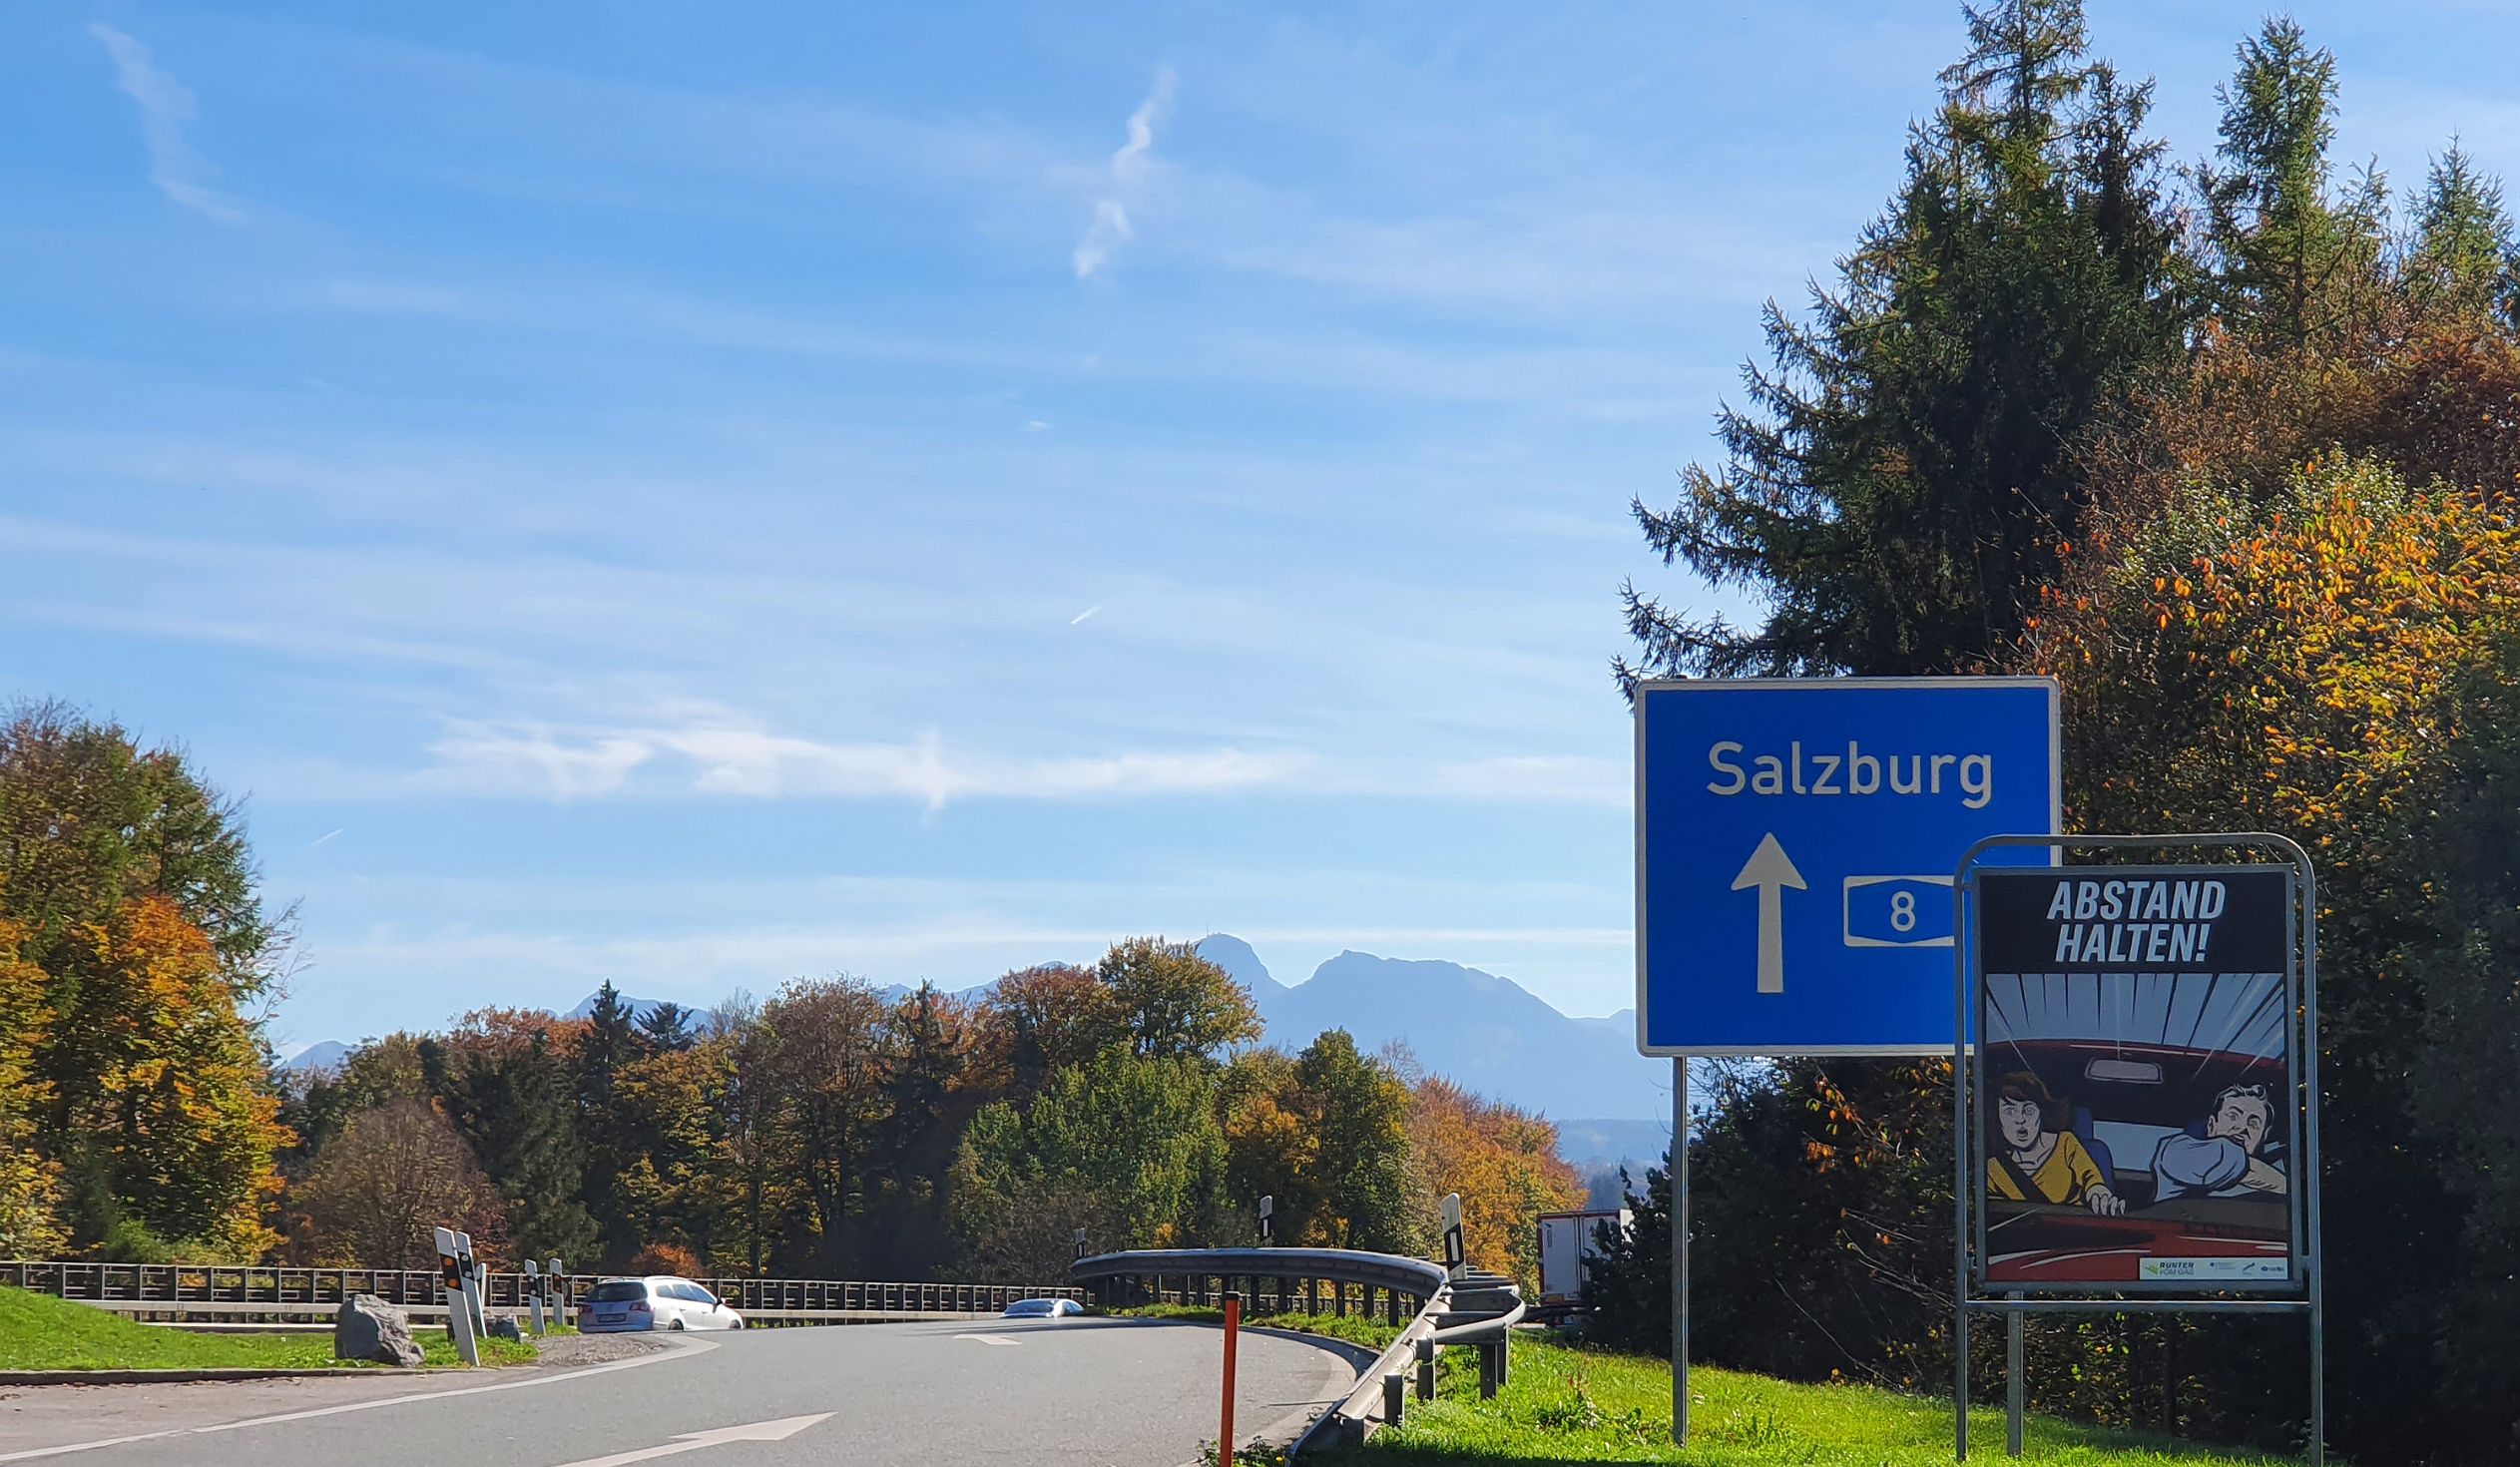 002-dag-001-onderweg.jpg - … Taxenbach in het Salzburgerland.